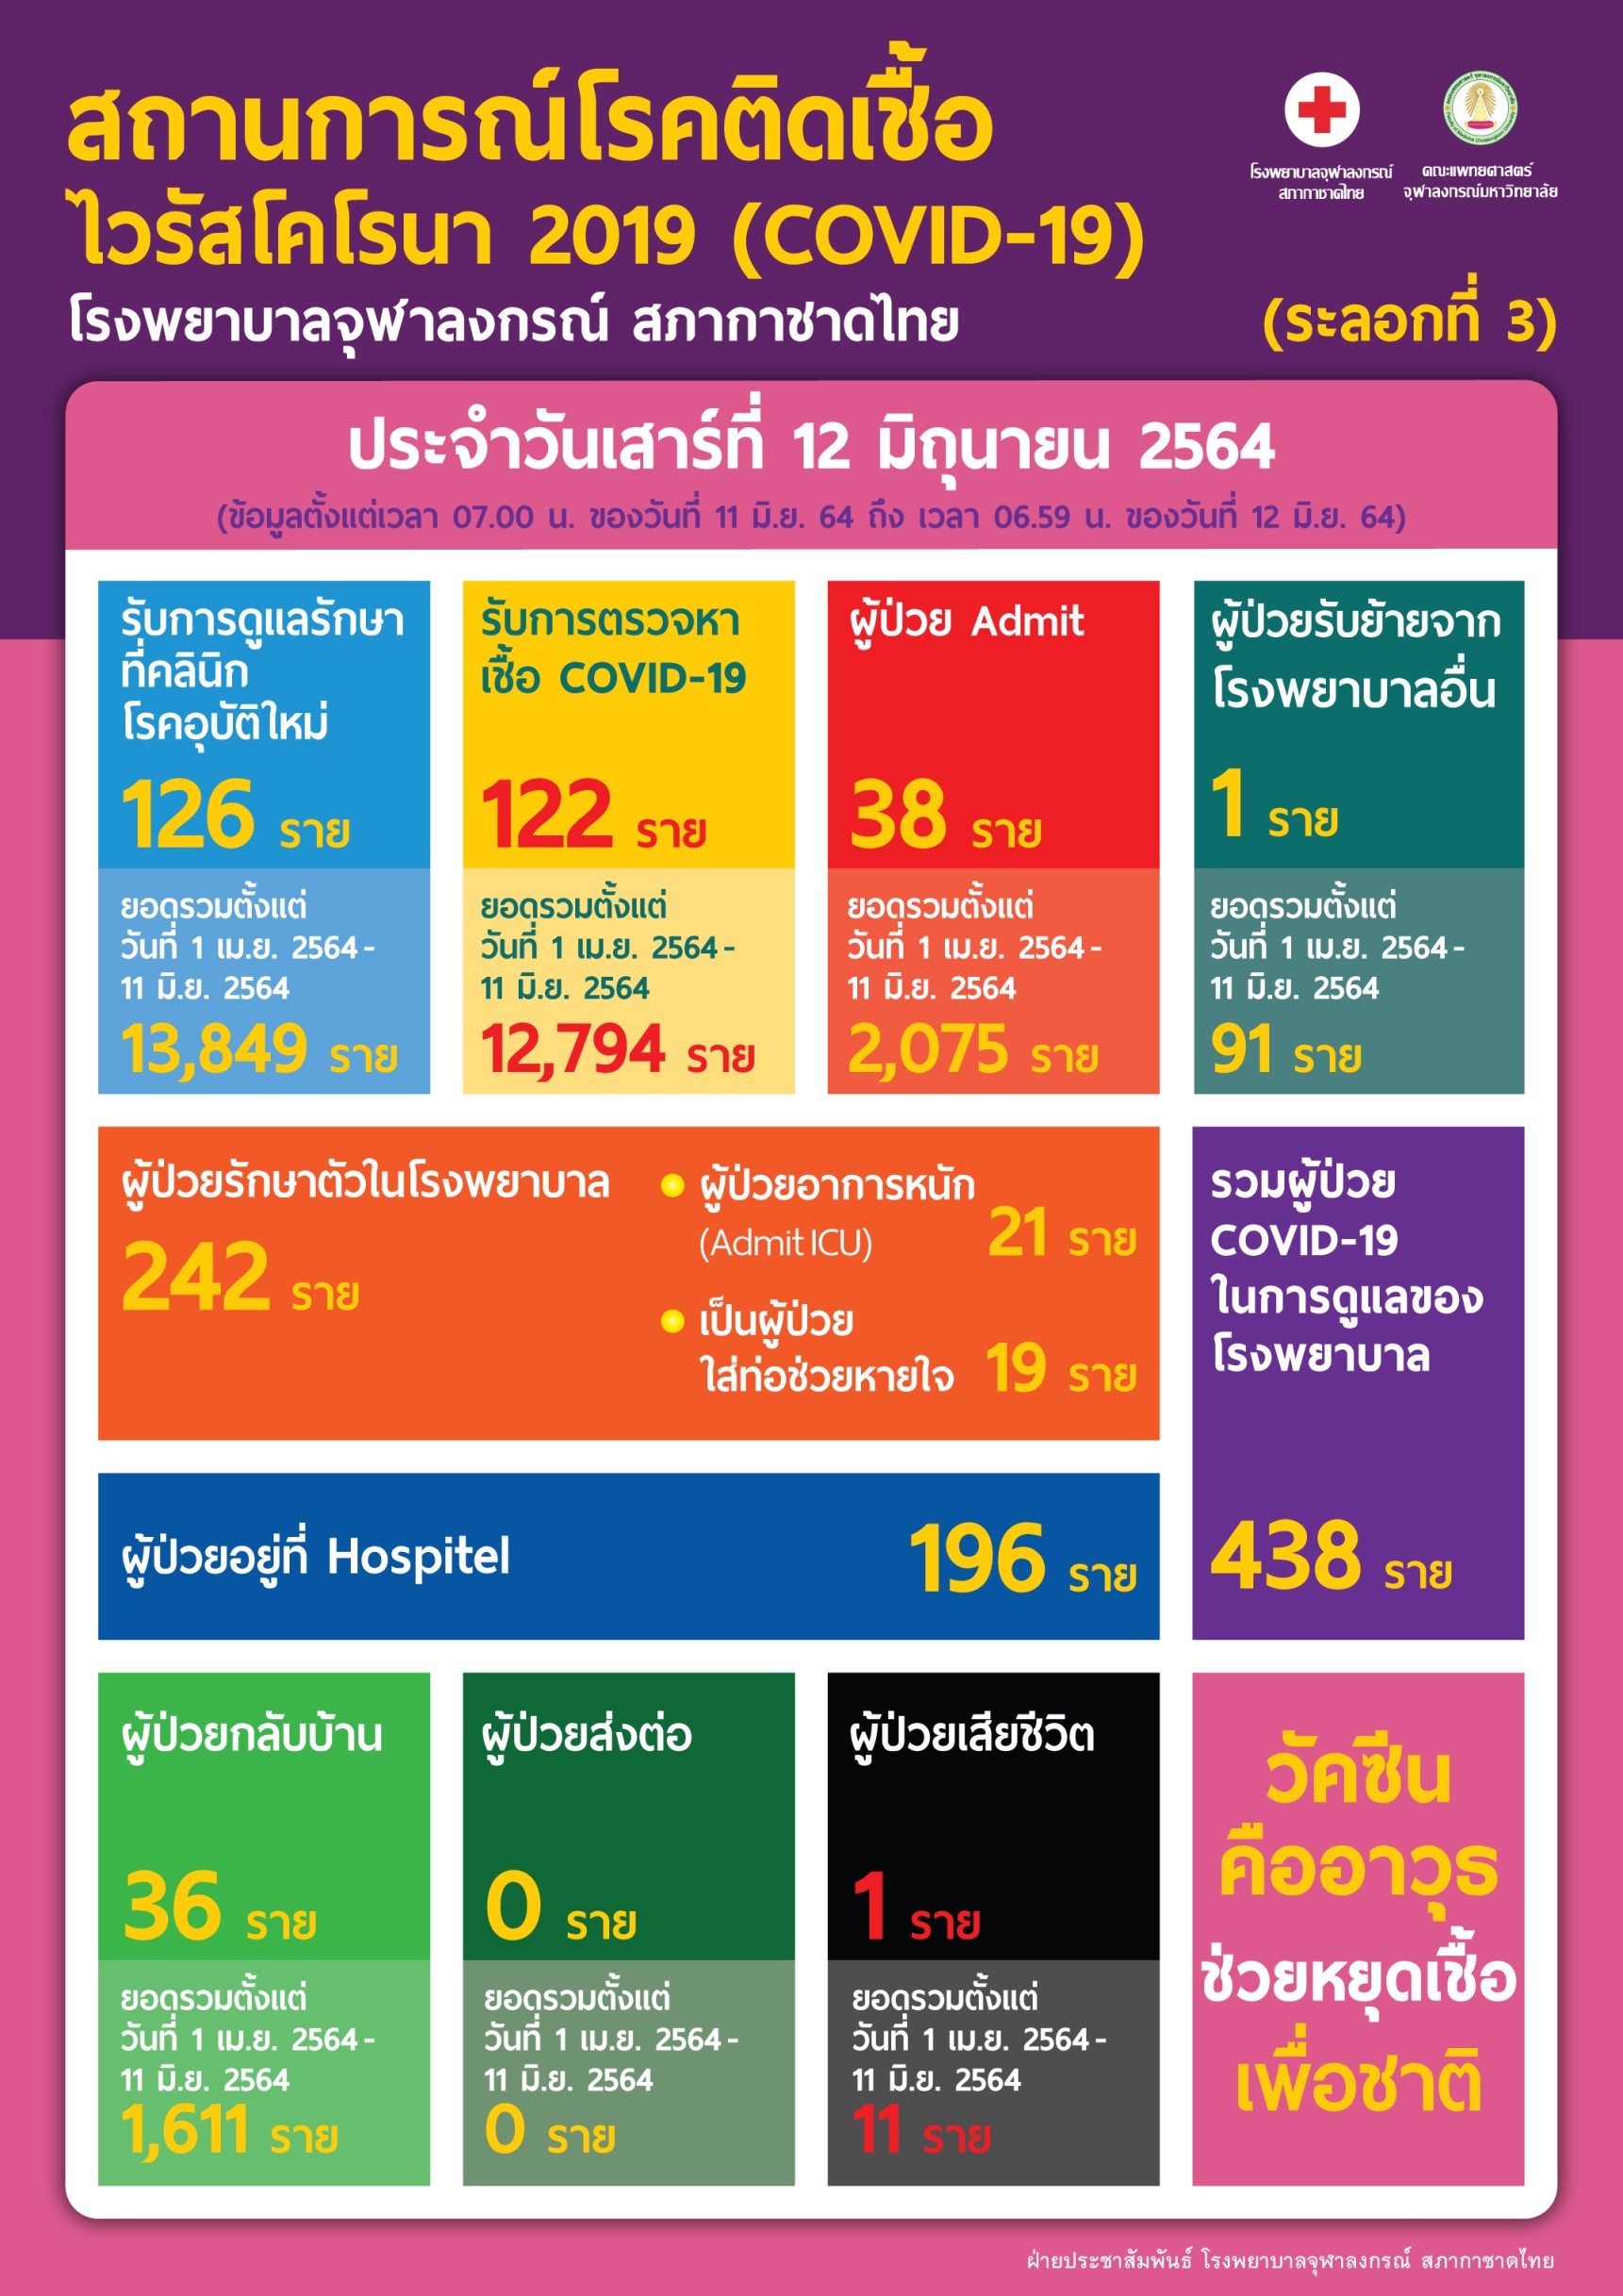 สถานการณ์โรคติดเชื้อ ไวรัสโคโรนา 2019 (COVID-19) (ระลอกที่ 3) โรงพยาบาลจุฬาลงกรณ์ สภากาชาดไทย ประจำวันเสาร์ที่ 12 มิถุนายน 2564